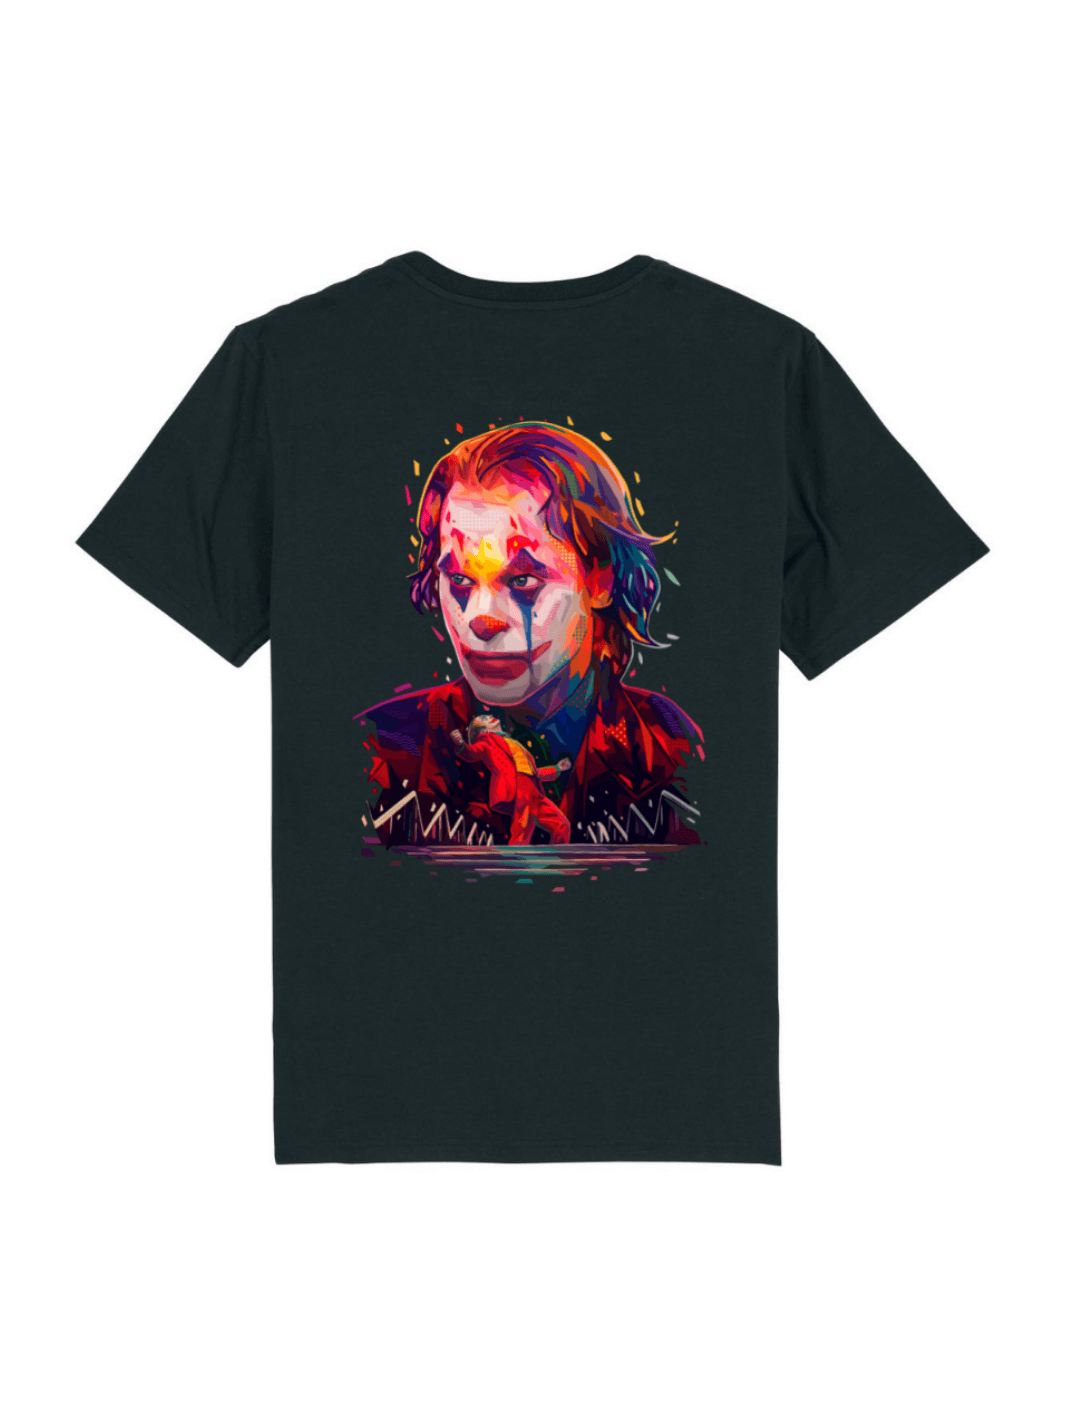 T-shirt nera Limitlex stampa Joker.